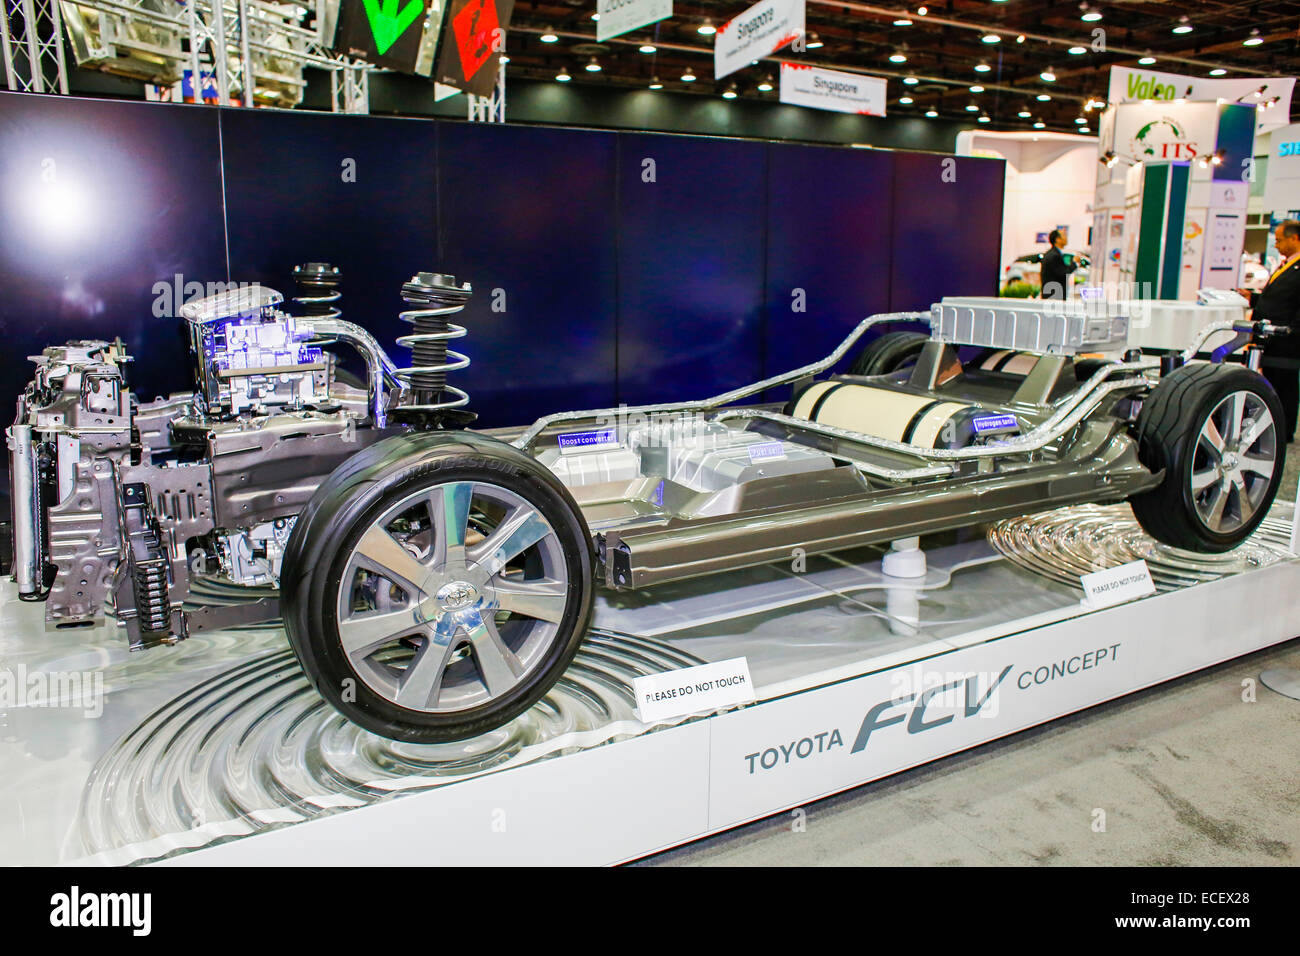 Detroit, Michigan - Le châssis de la Toyota FCV concept à pile à combustible du véhicule, sur l'affichage à l'Intelligent Transport S Banque D'Images